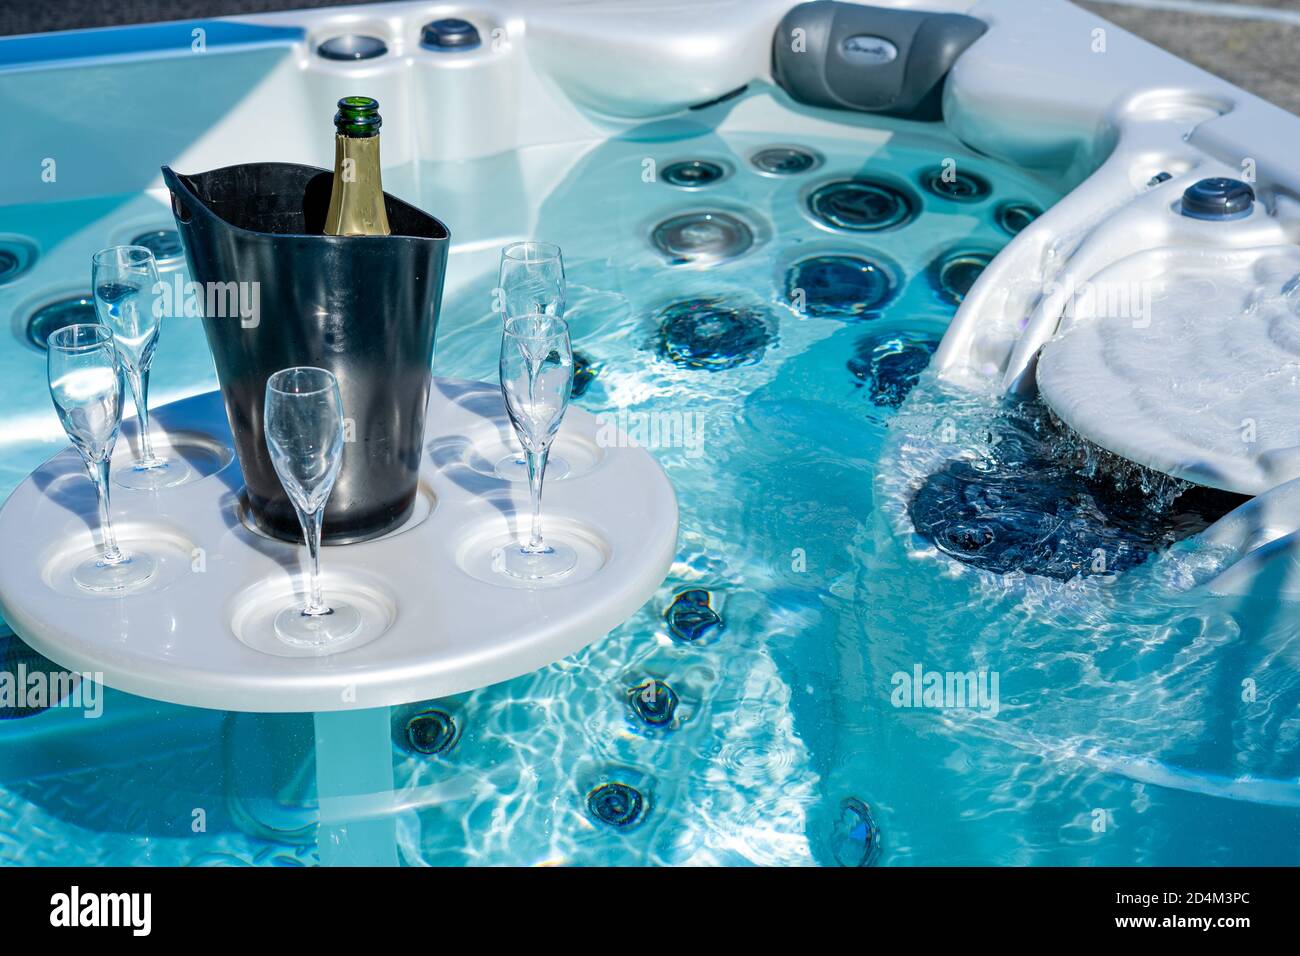 Eine Flasche Champagner In Einem Schwarzen Eiskübel Und Gläser Auf Dem Tisch Im Whirlpool